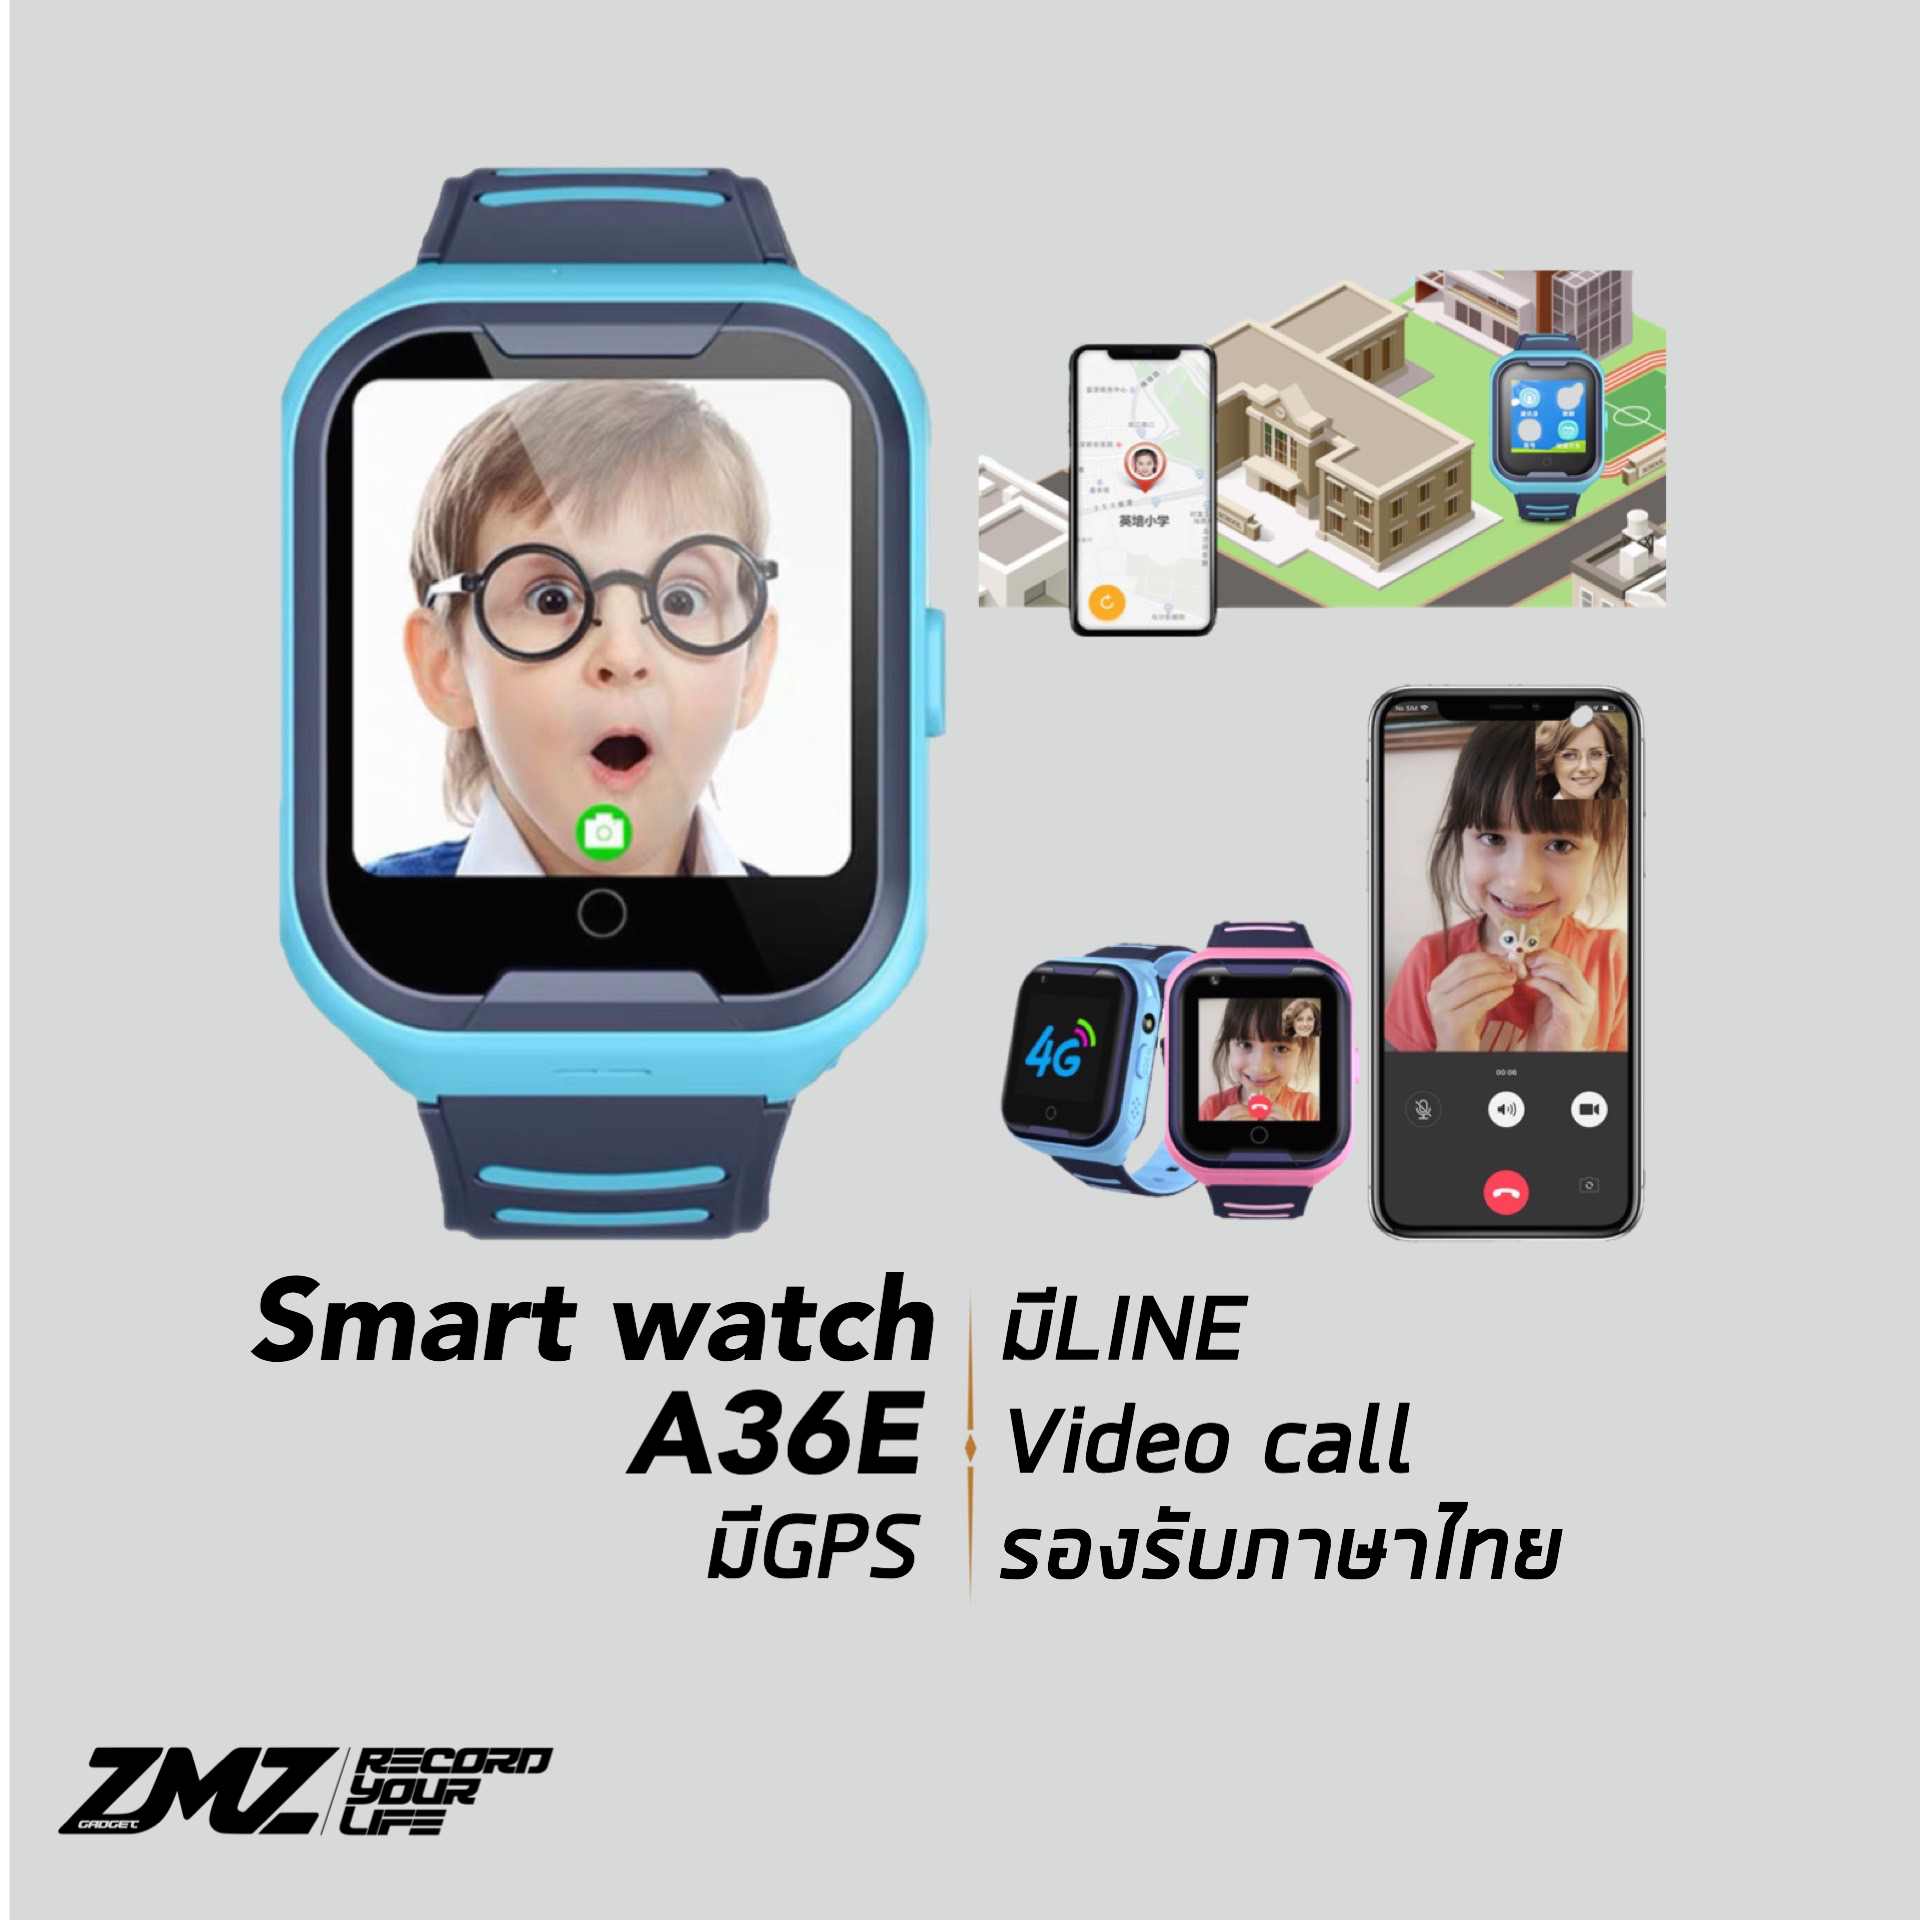 ZMZ Shop รุ่นใหม่ 2019 นาฬิกาเด็ก รุ่น A36E กันน้ำ โทรได้ GPS แท้แม่นยำ มีกล้องหน้า เมนูภาษาไทย ใช้งานง่าย